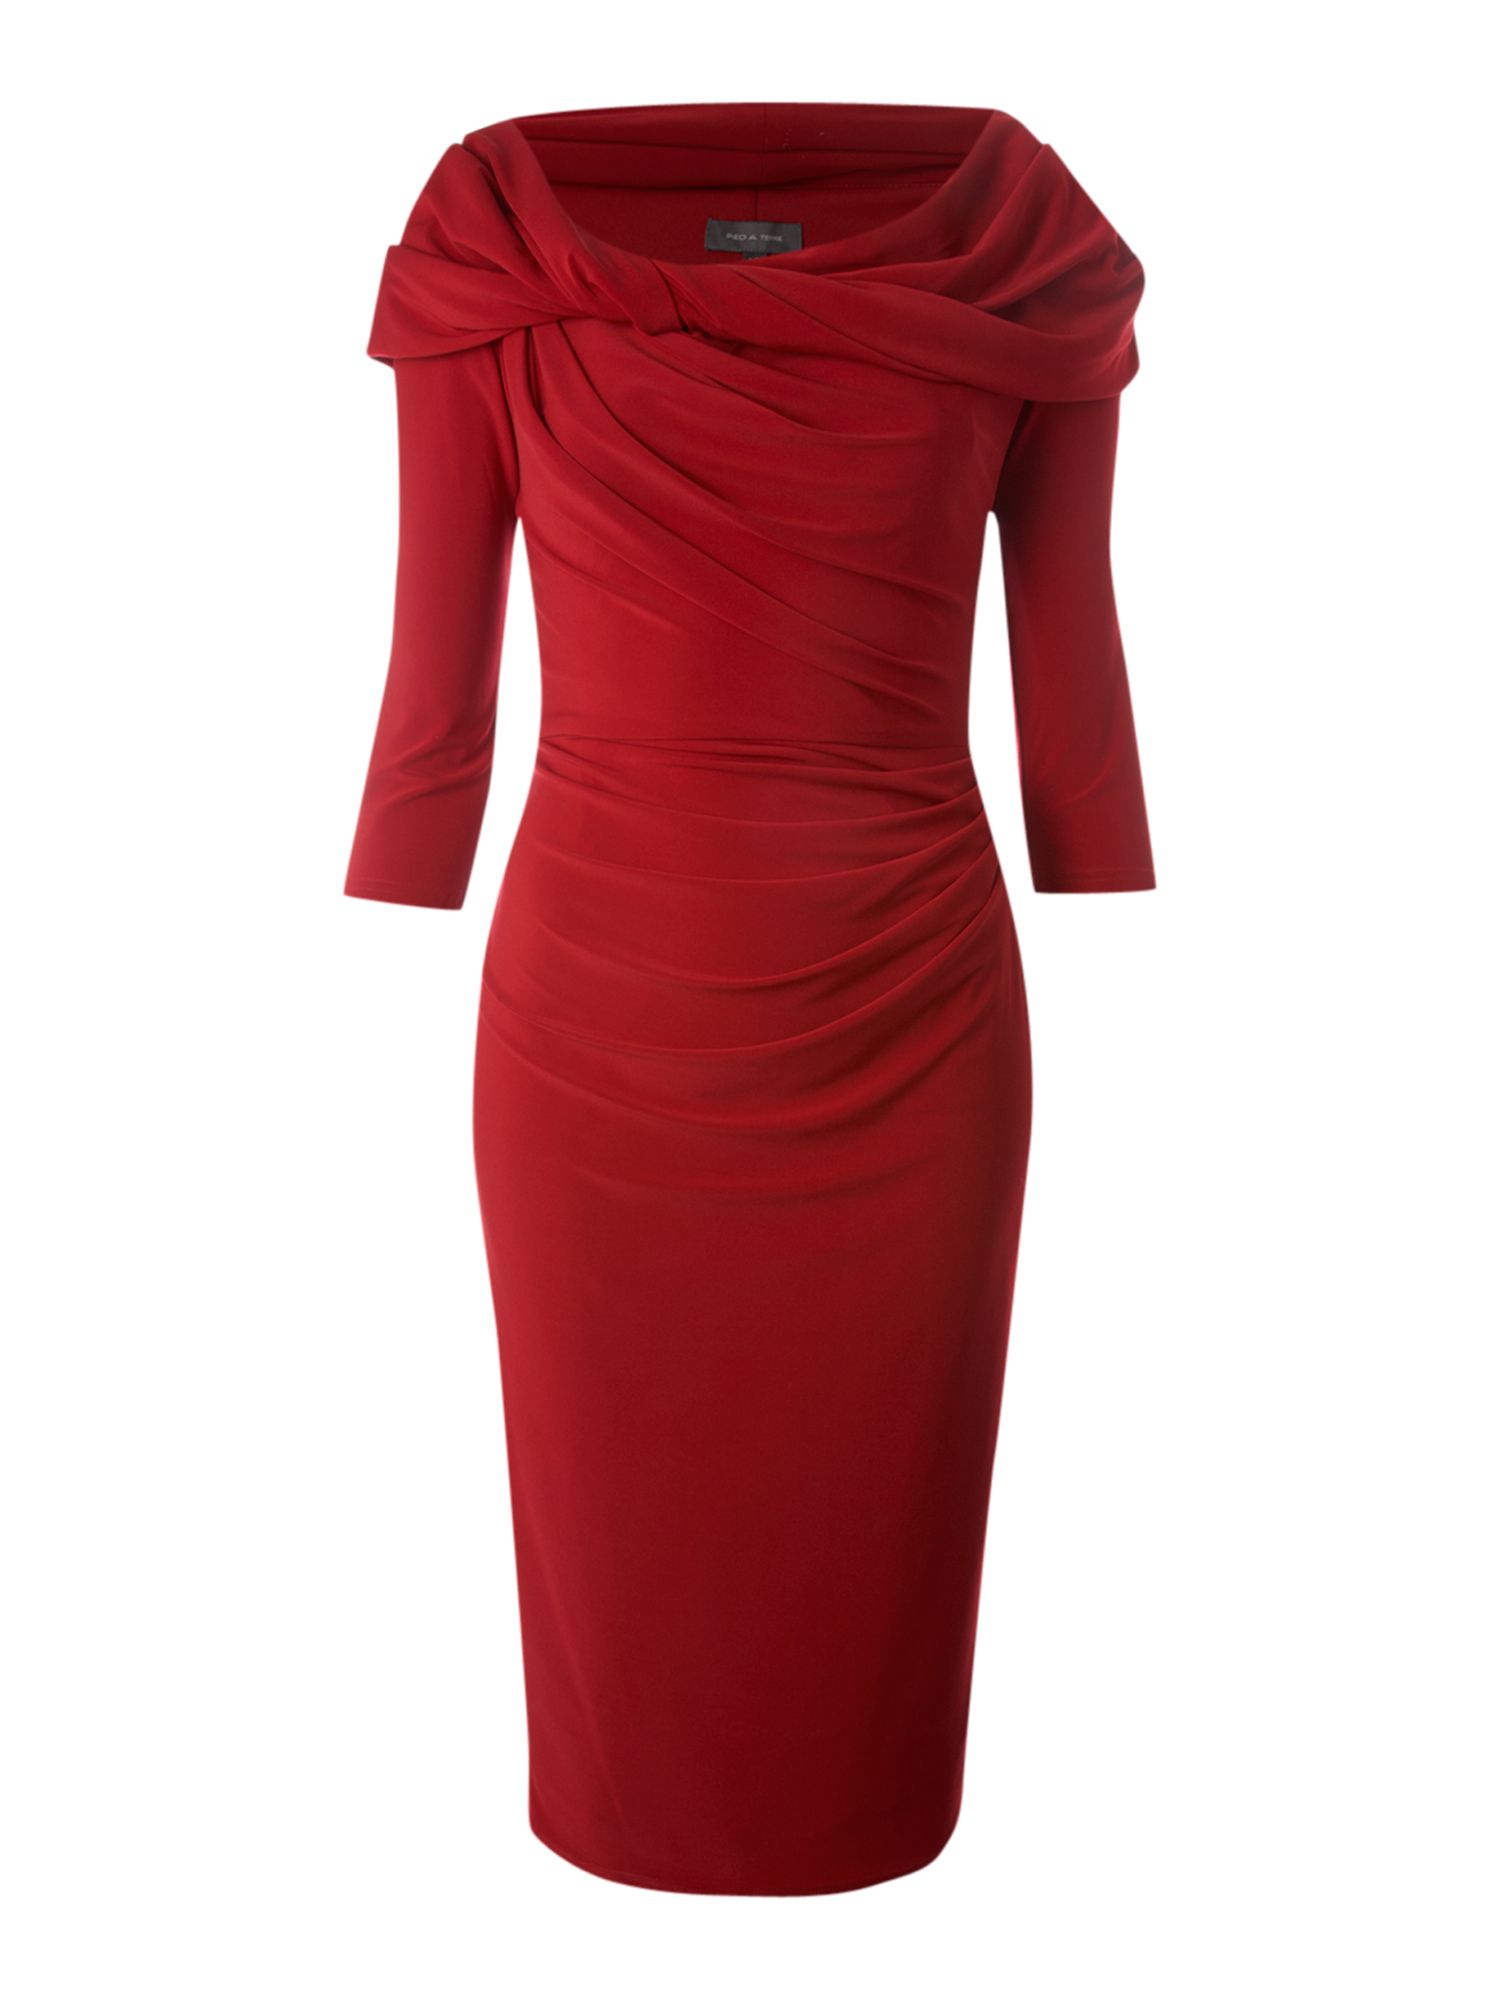 Pied A Terre Long Sleeve Slinky Jersey Dress in Red | Lyst